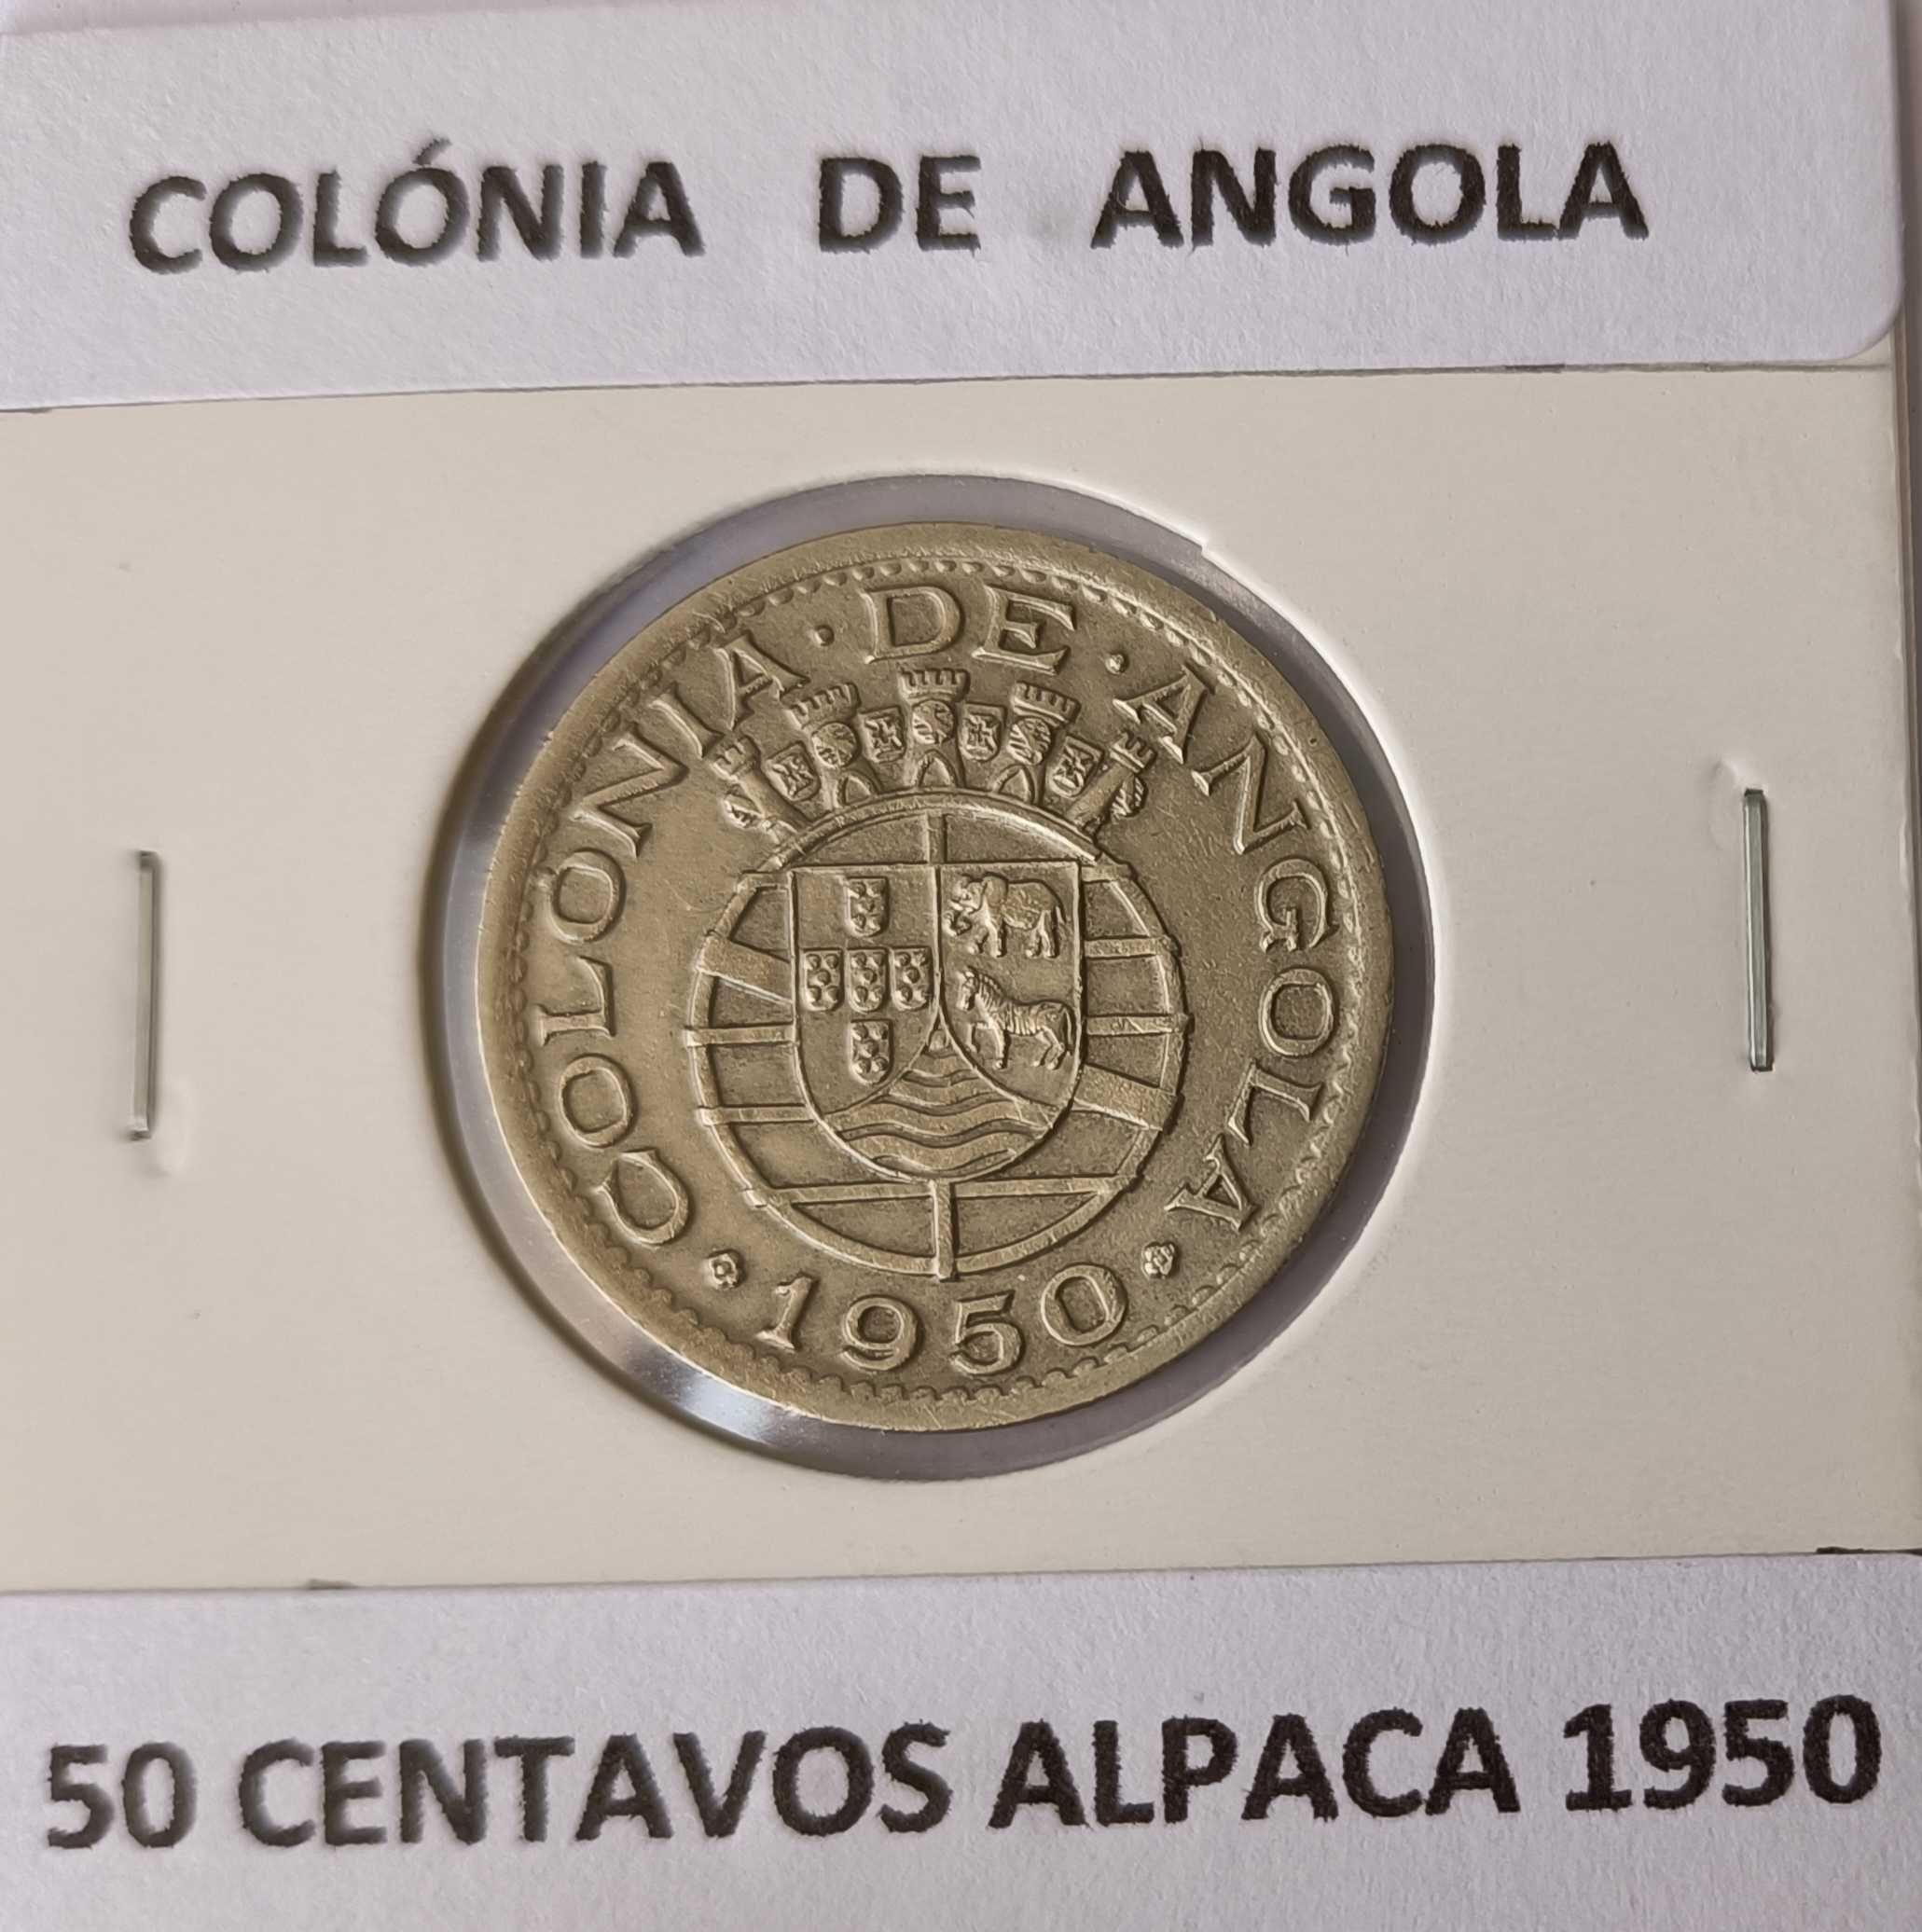 Moeda Portuguesa de 50 centavos da Ex colónia Ultramarina de Angola